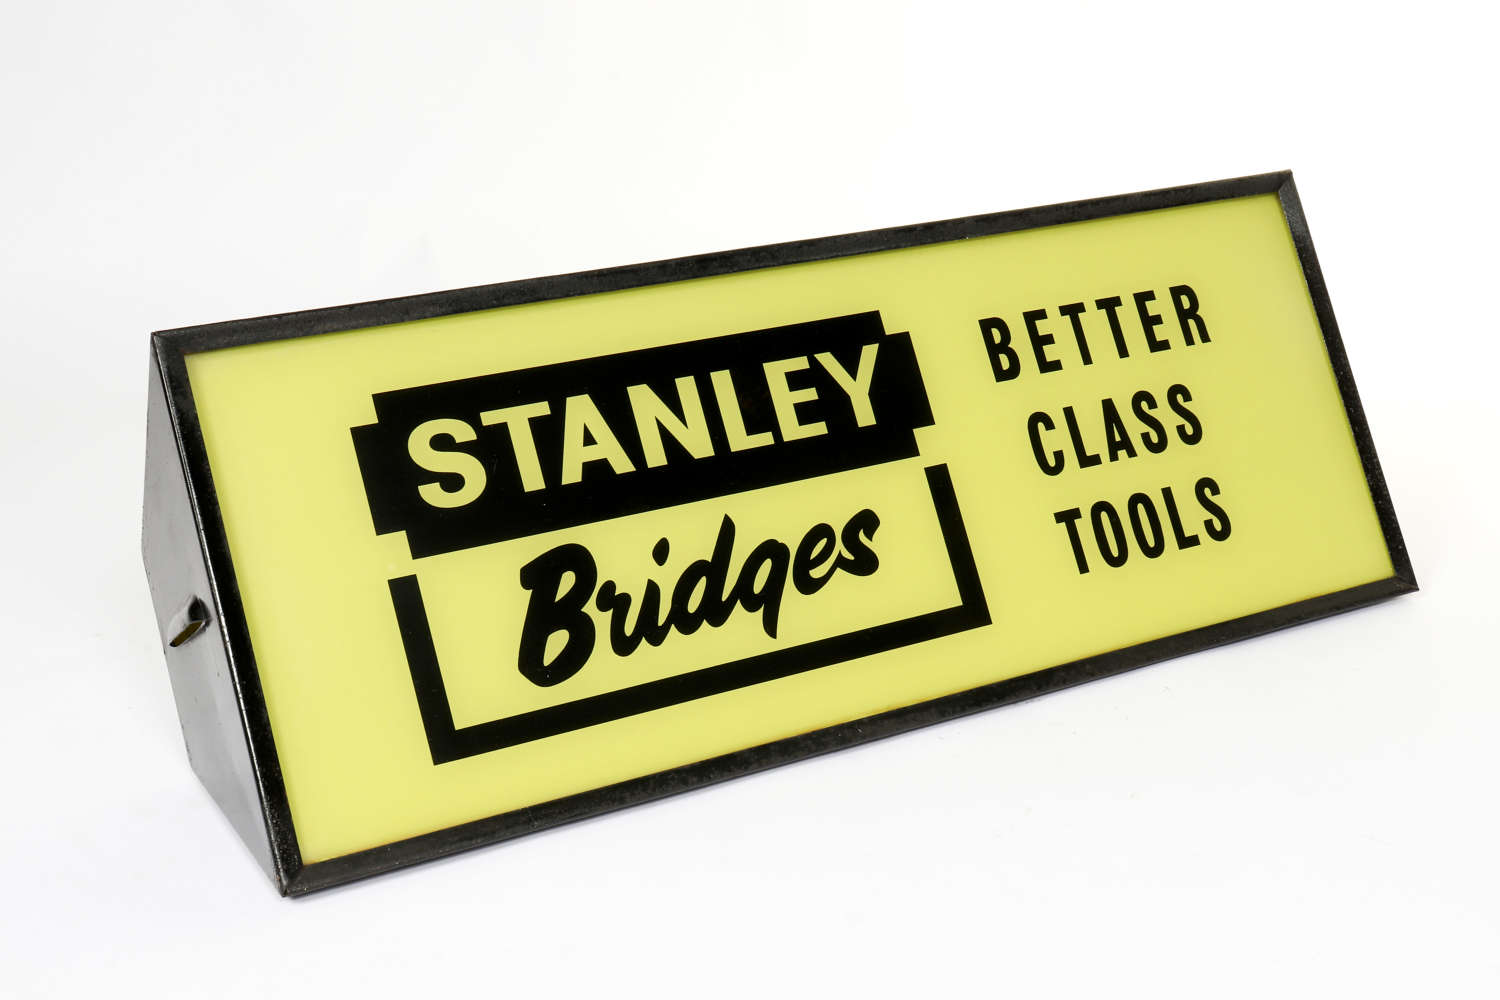 Original vintage Stanley Bridges advertising lightbox